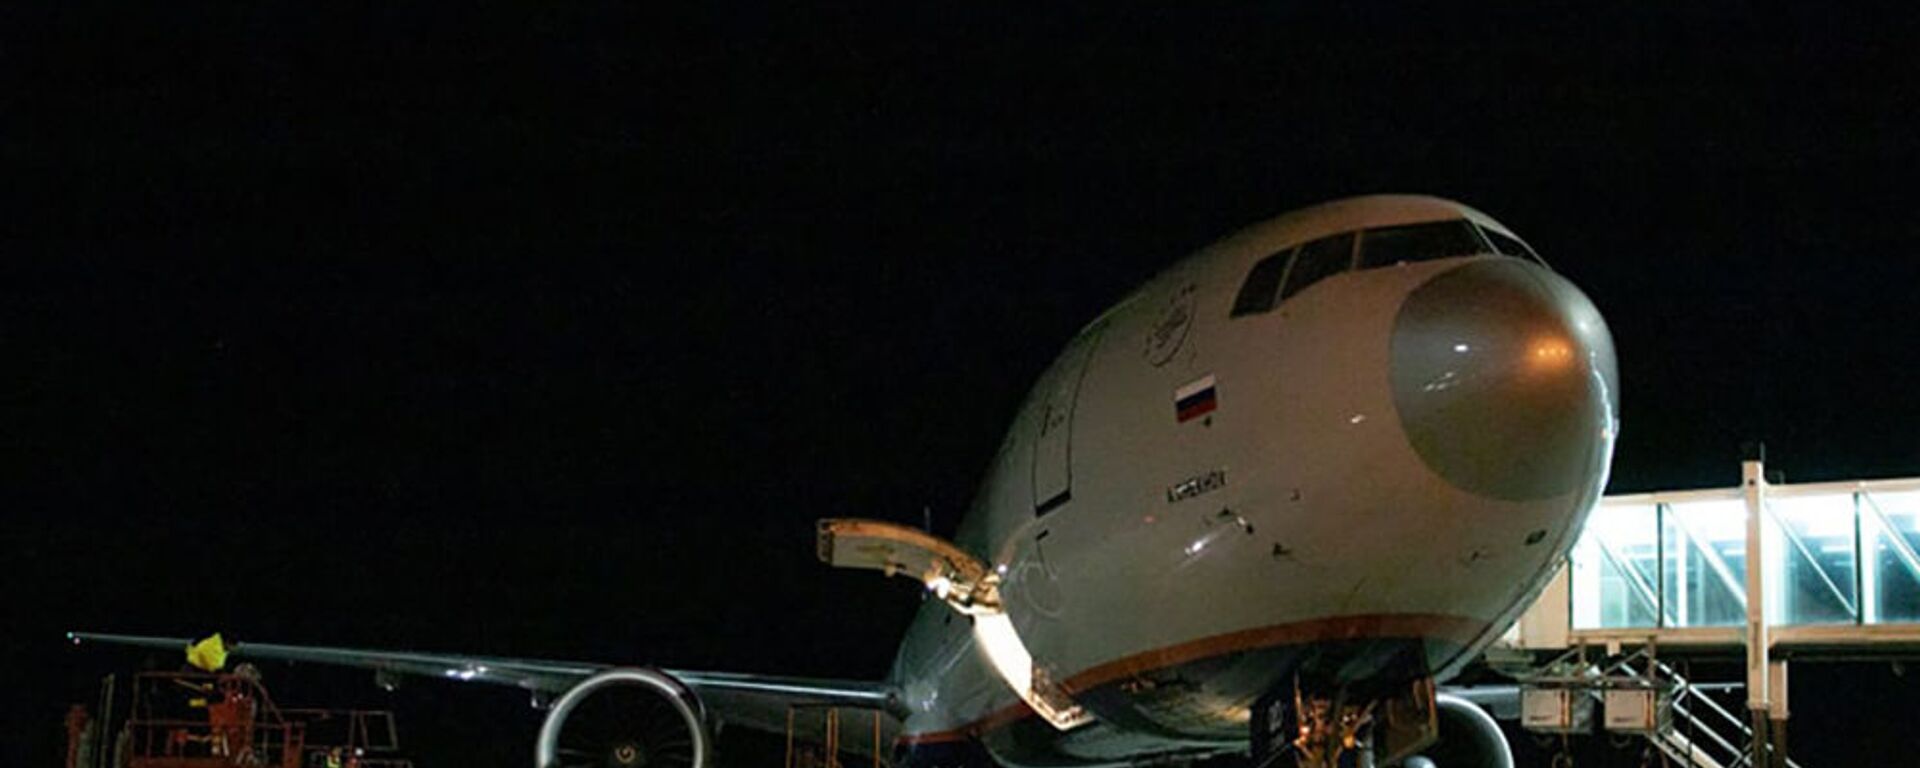 Самолет с грузом вакцины Sputnik-V прибыл в Армению - Sputnik Армения, 1920, 07.07.2021